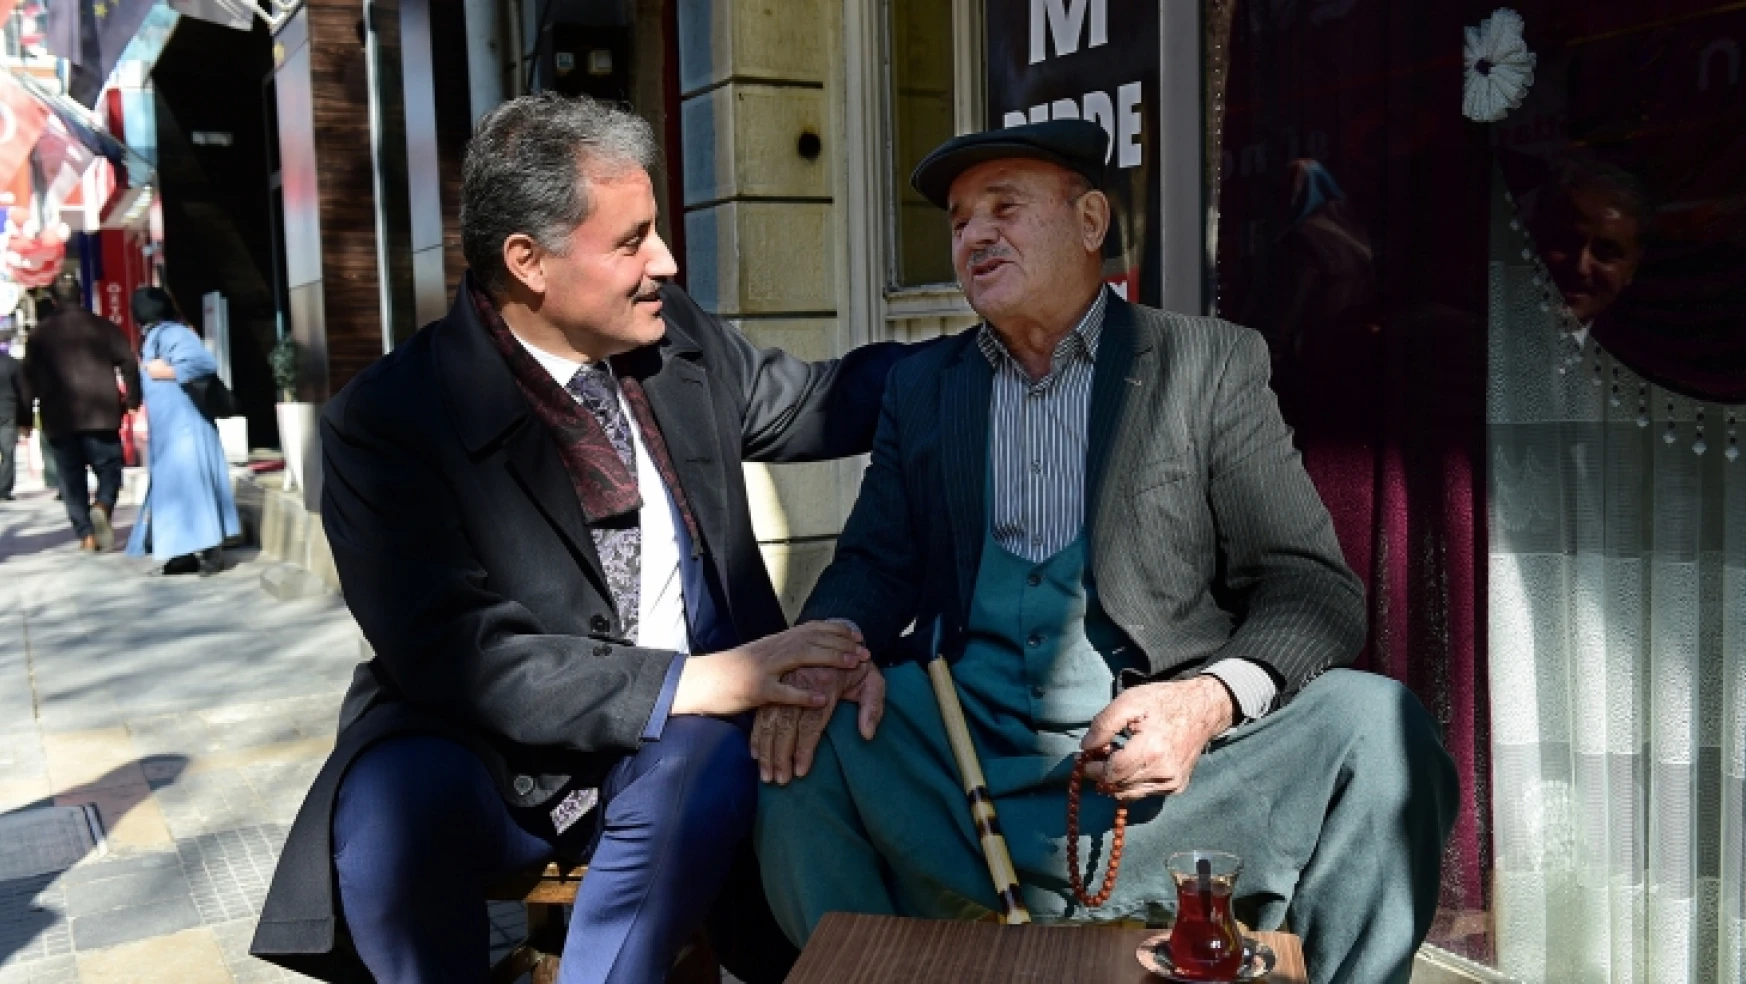 Başkan Çakır Fuzuli Caddesi Esnafını Ziyaret Etti